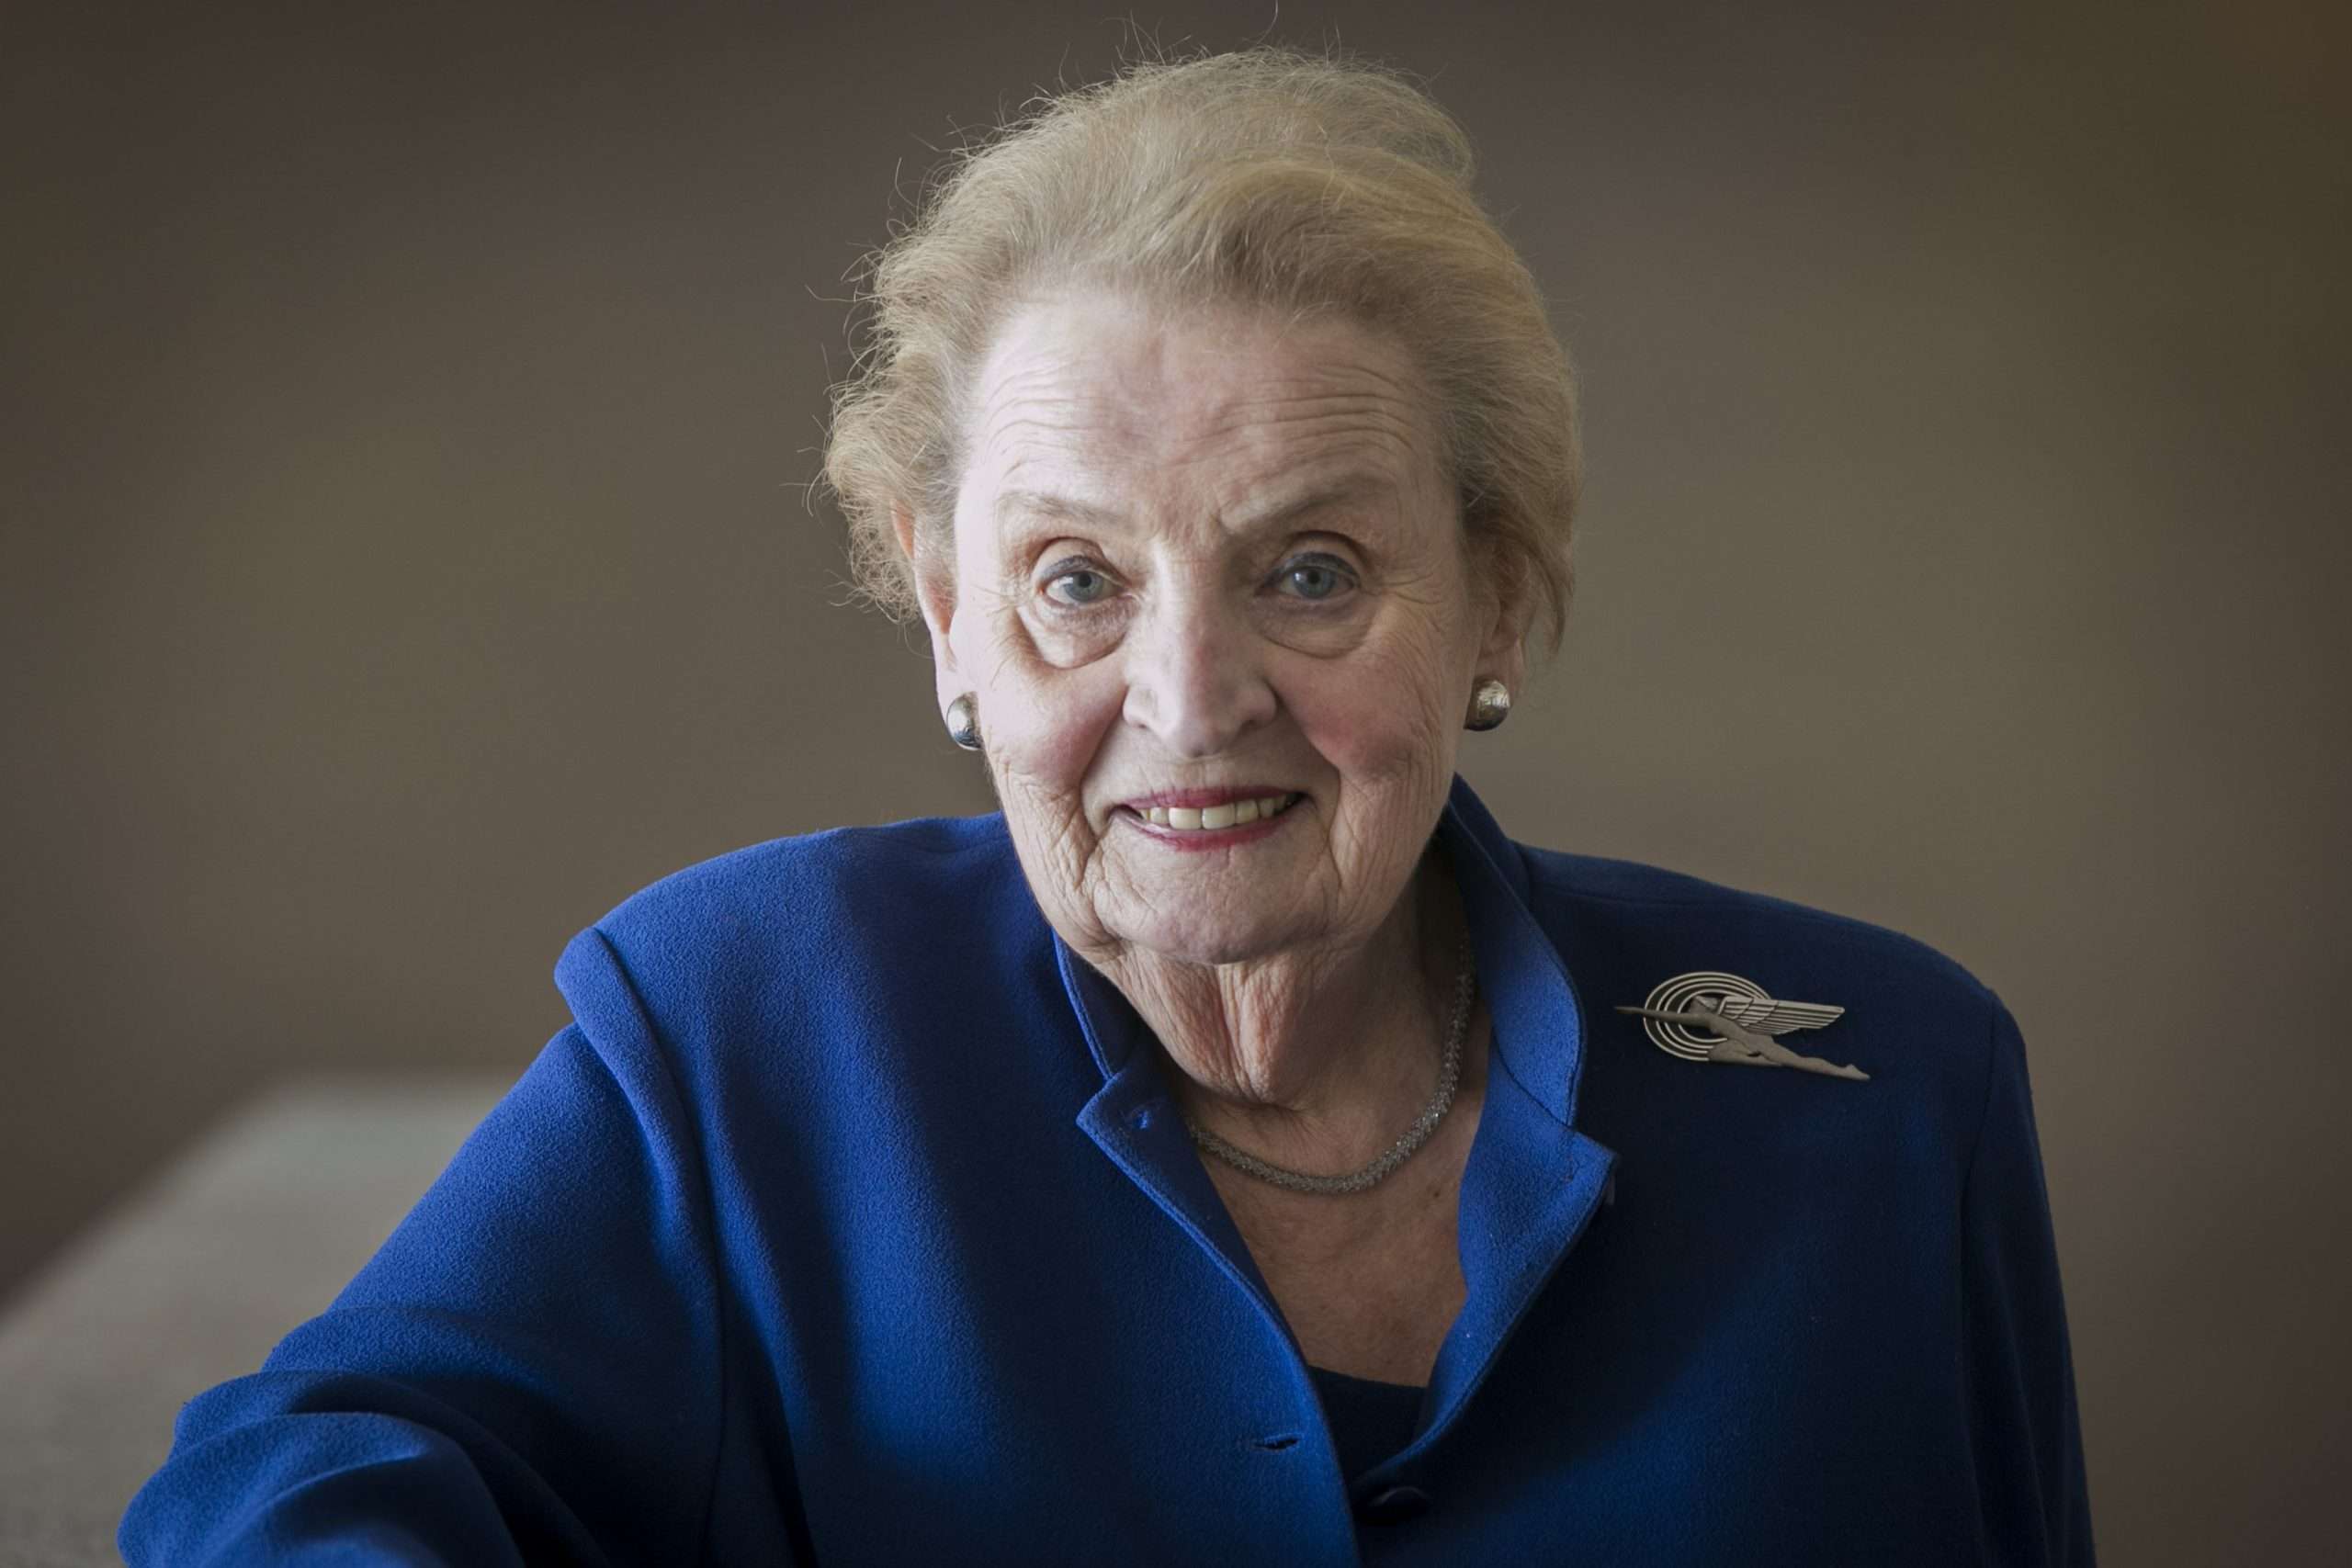 ABD'nin İlk Kadın Dışişleri Bakanı Madeleine Albright Vefat Etti! Madeleine Albright kimdir?